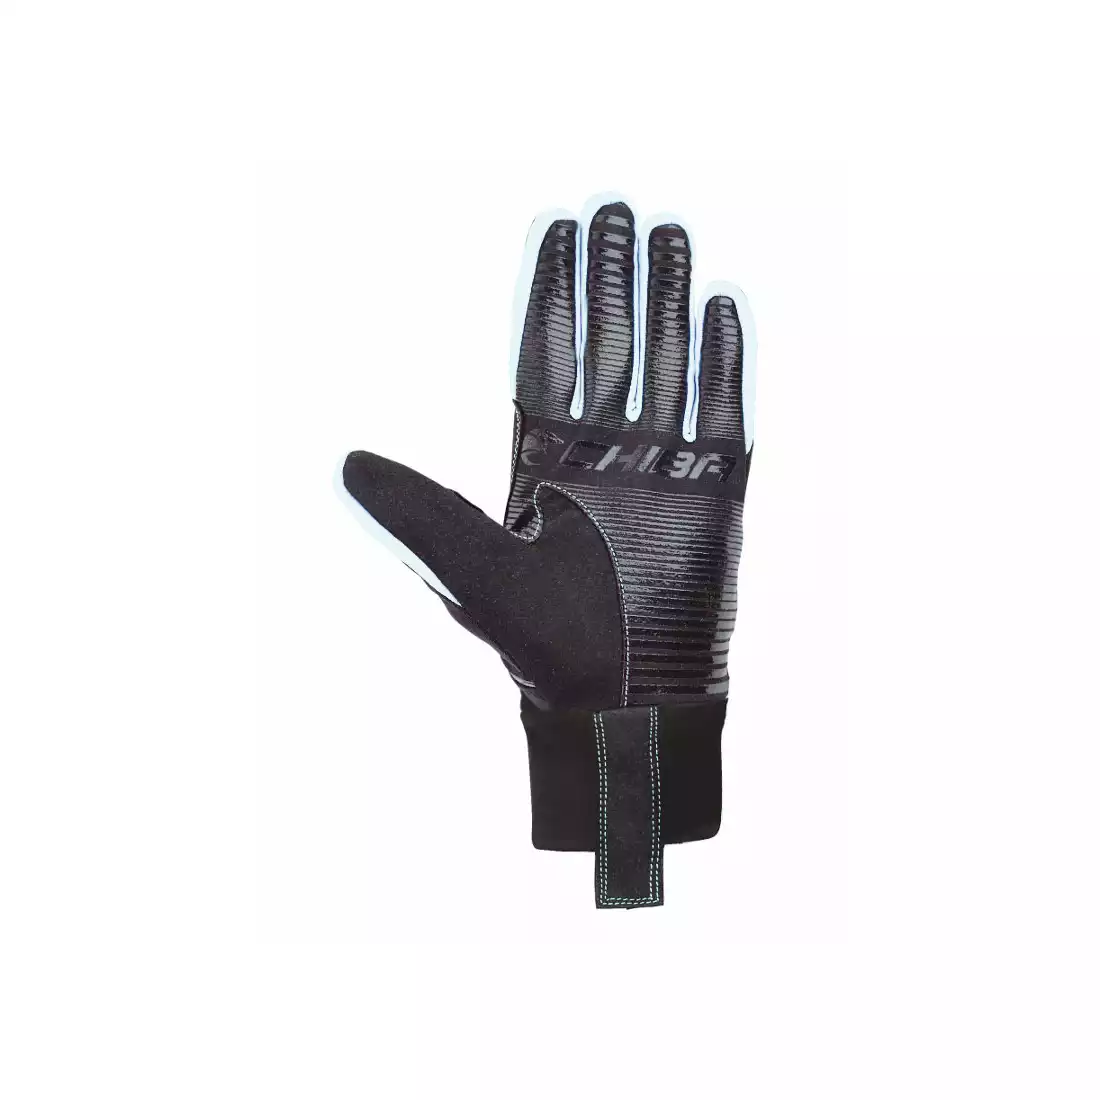 CHIBA CROSS WINDSTOPPER - rękawiczki zimowe, czarny-biały 31517